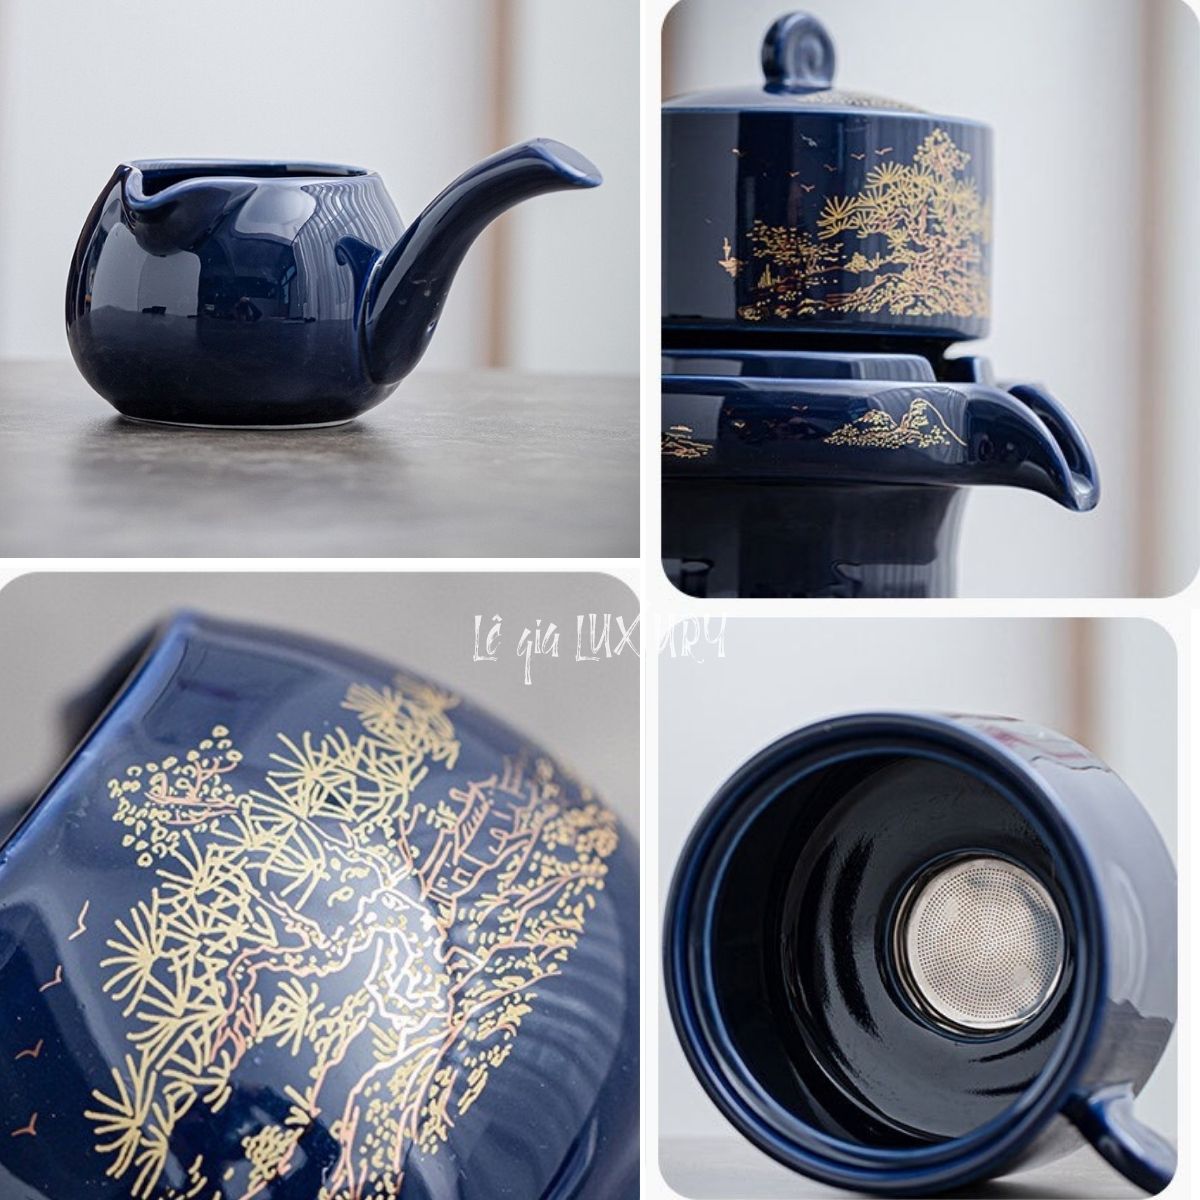 Bộ ấm chén pha trà Cối Xay Xanh Lam - Hàng cao cấp họa tiết vẽ Vàng (bao gồm Hộp Quà+ túi xách đi kèm), Bộ ấm chén trà đạo cao cấp